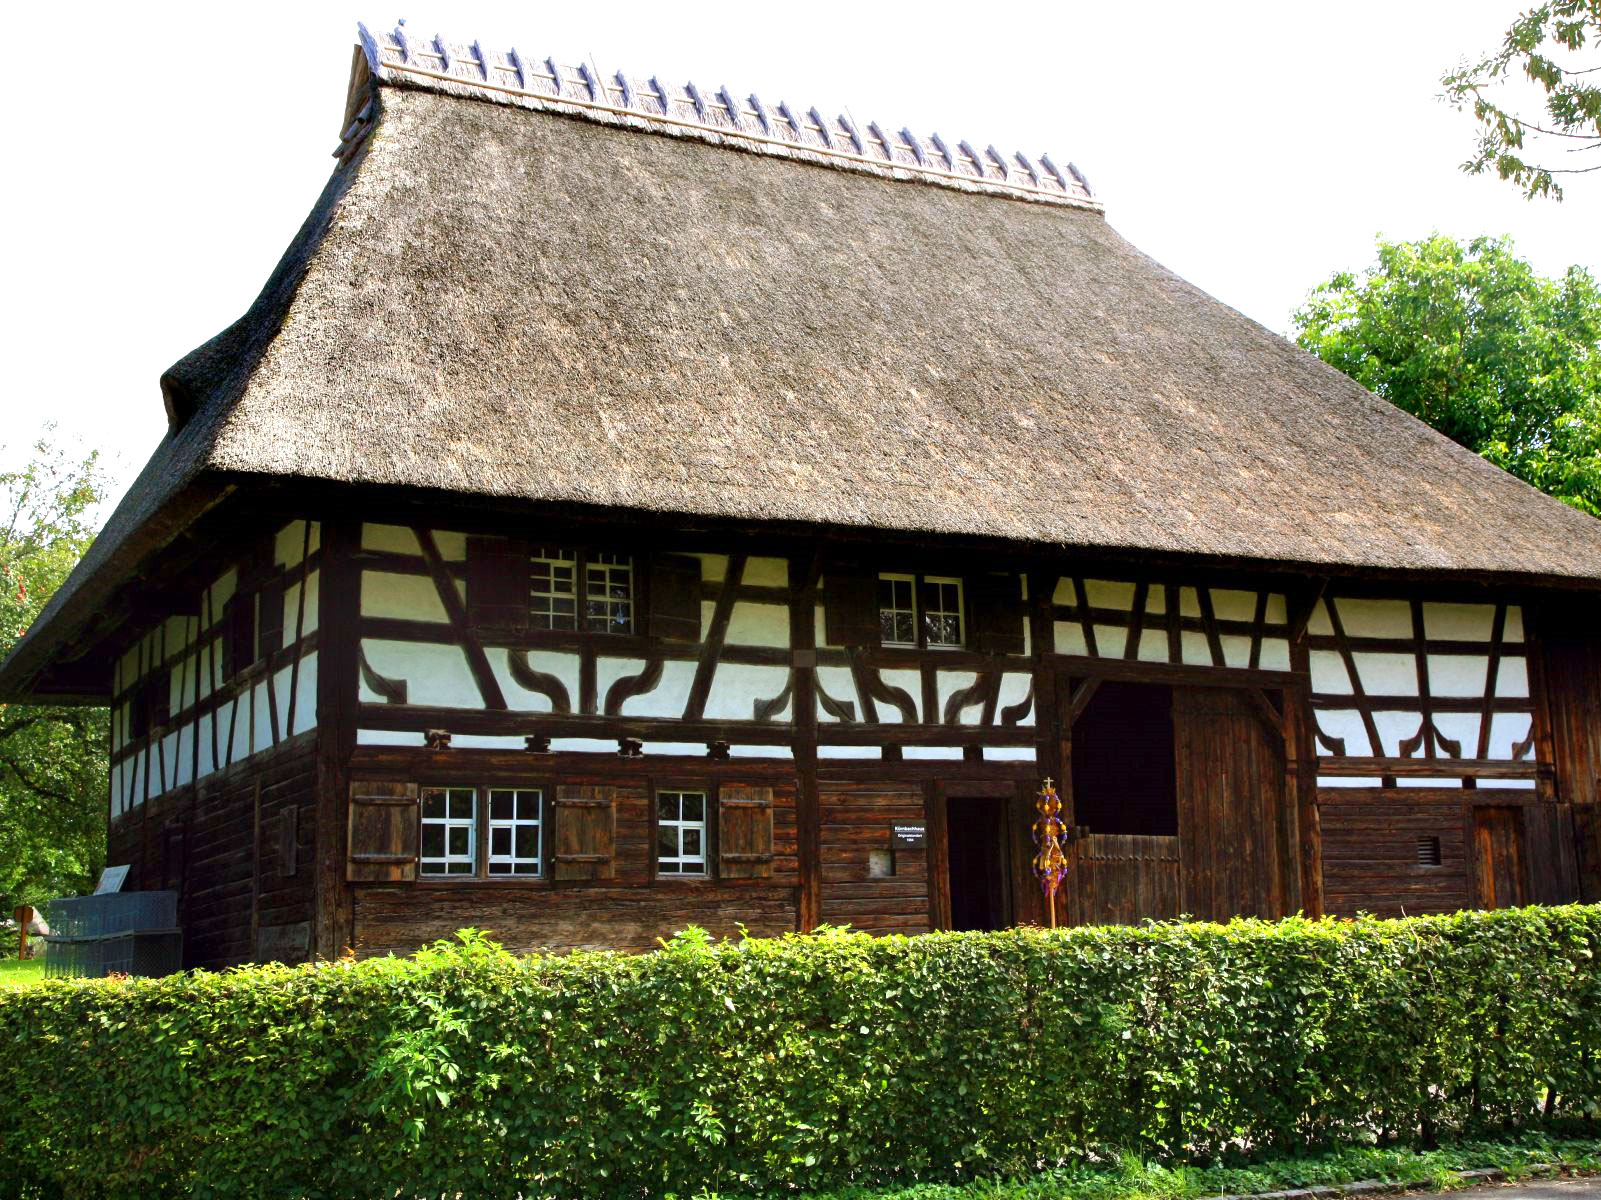 Museumsdorf Kürnbach